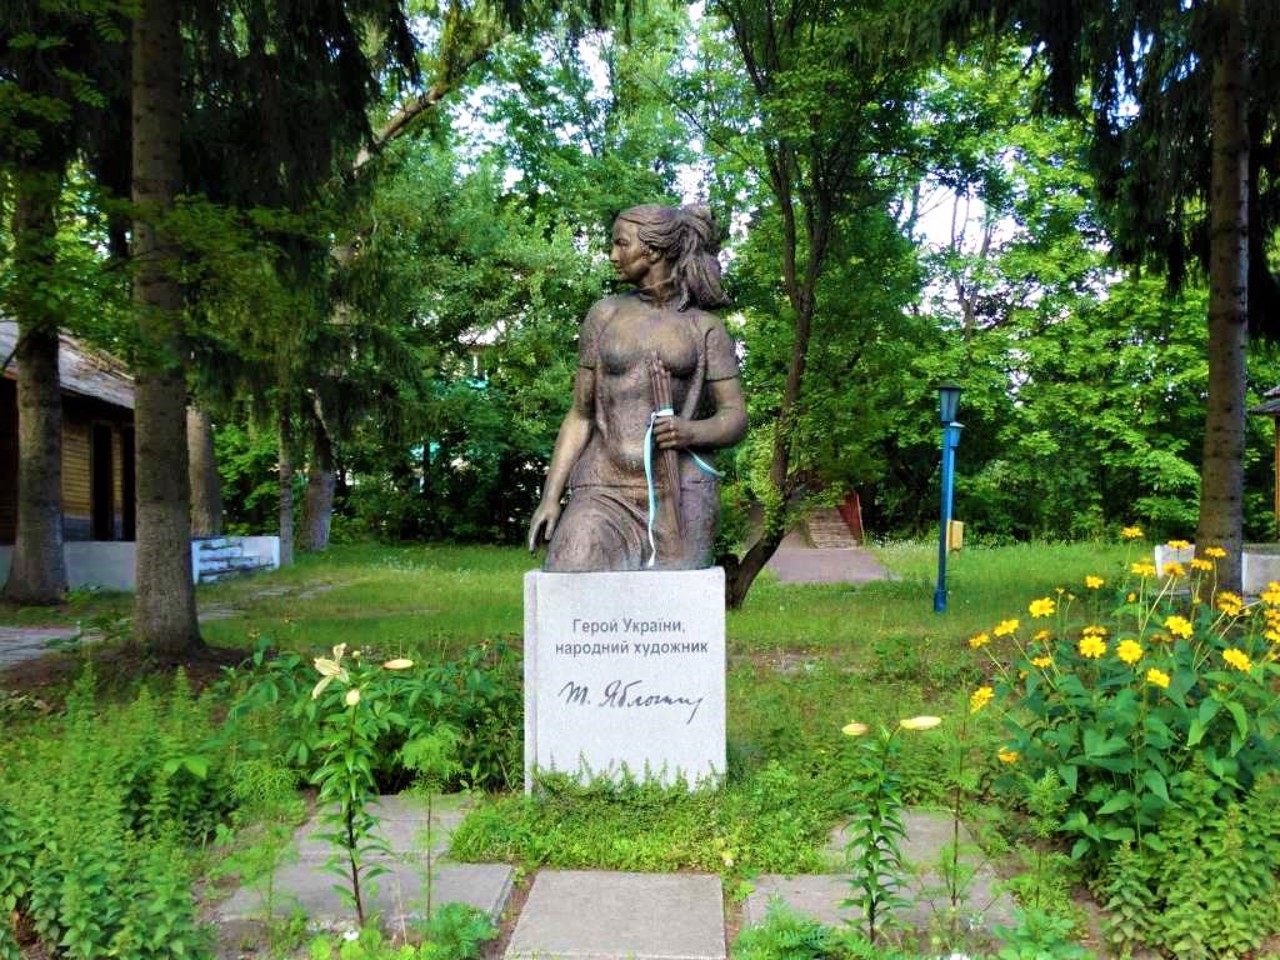 Monument to Yablonska, Sedniv